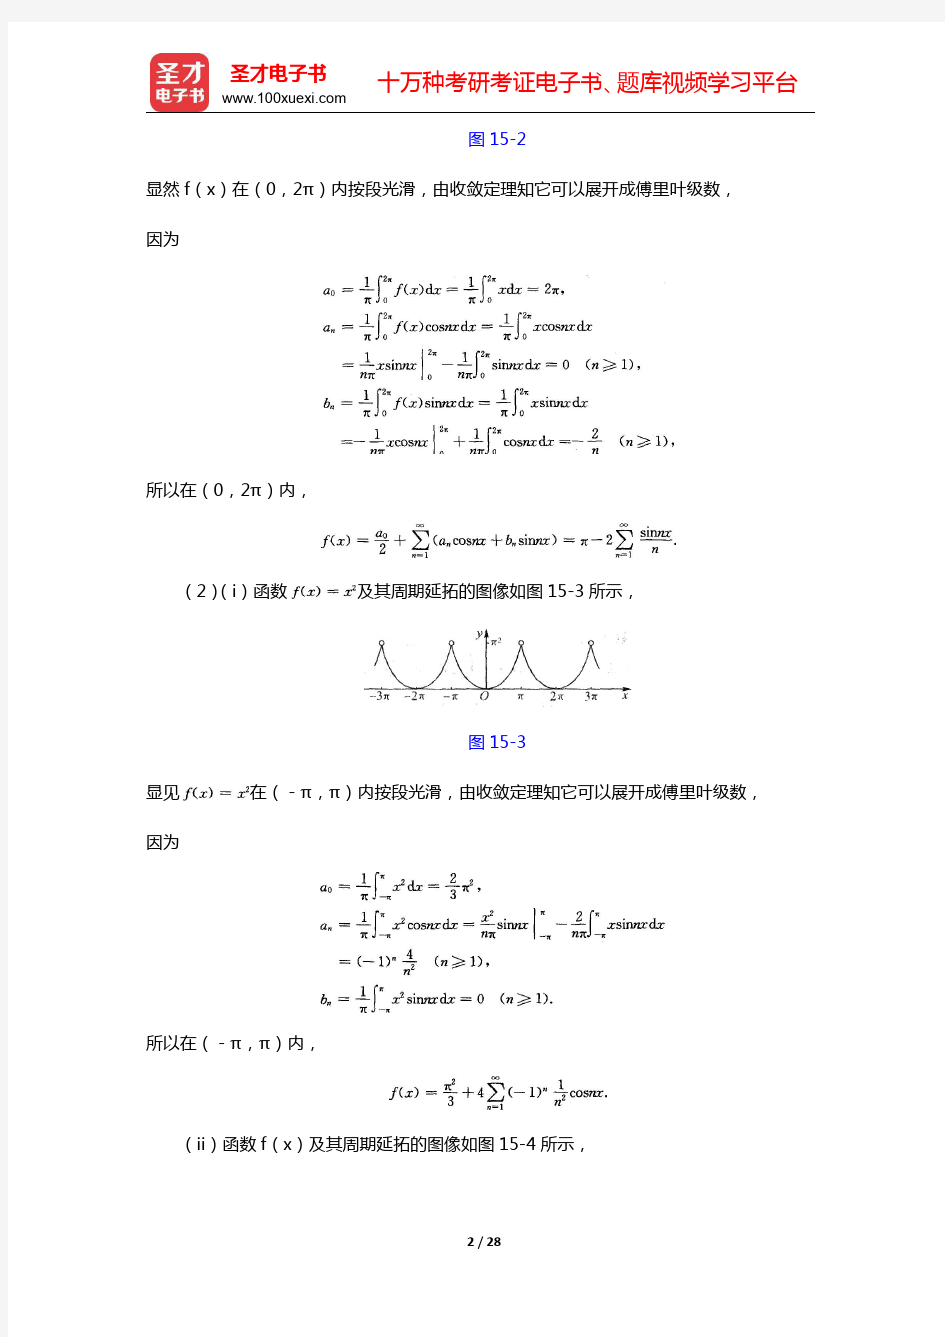 华东师范大学数学系《数学分析》(第4版)(下册)课后习题-傅里叶级数(圣才出品)